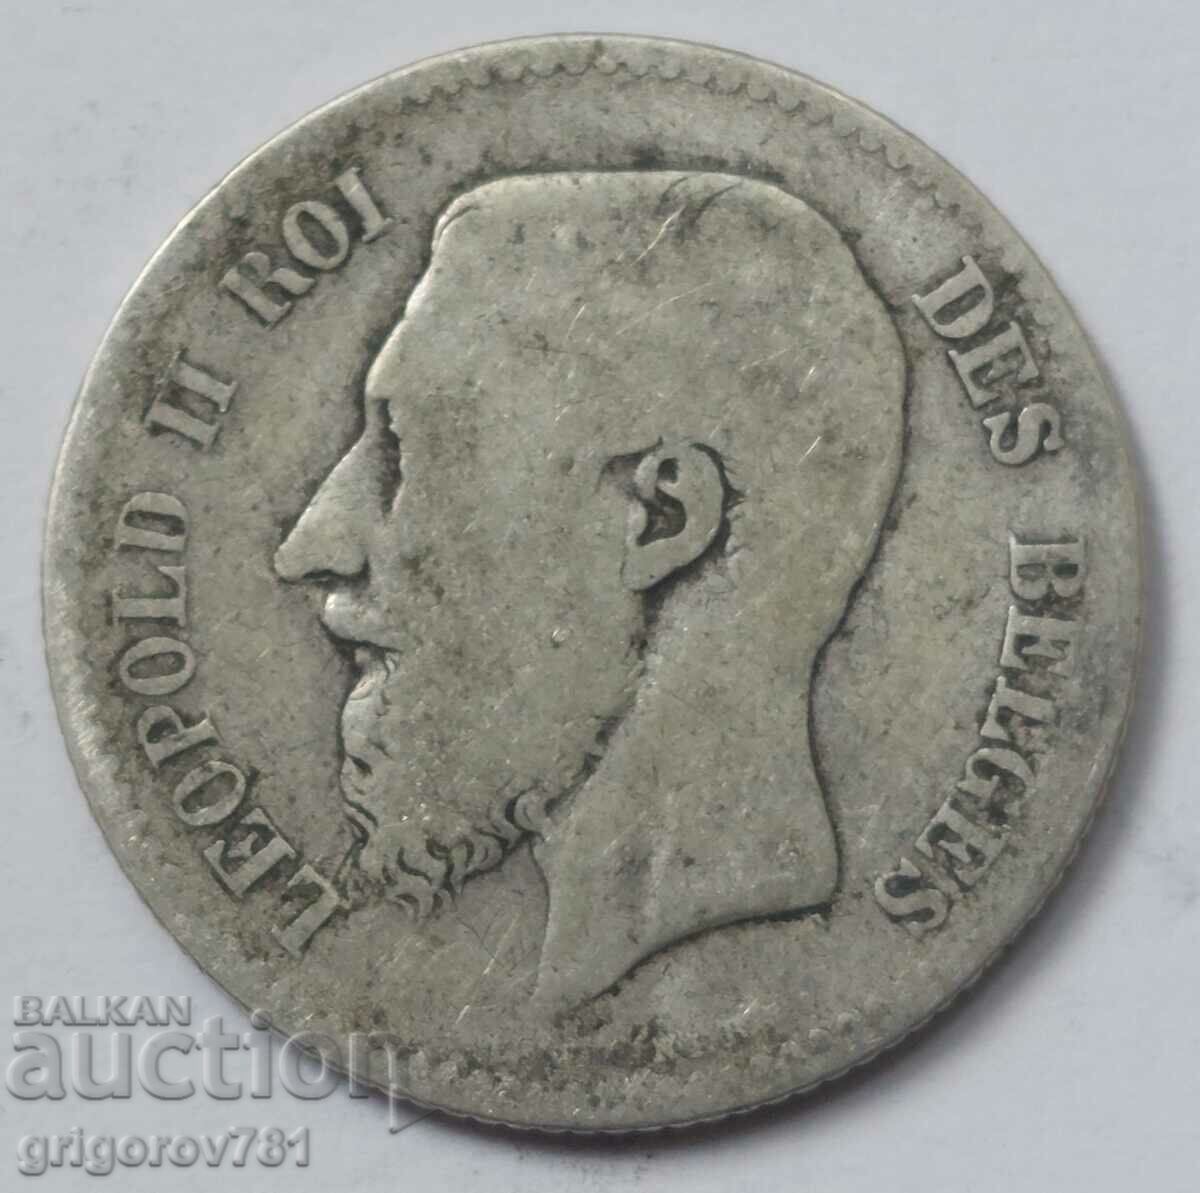 Ασημένιο 1 φράγκου Βέλγιο 1867 - ασημένιο νόμισμα #59